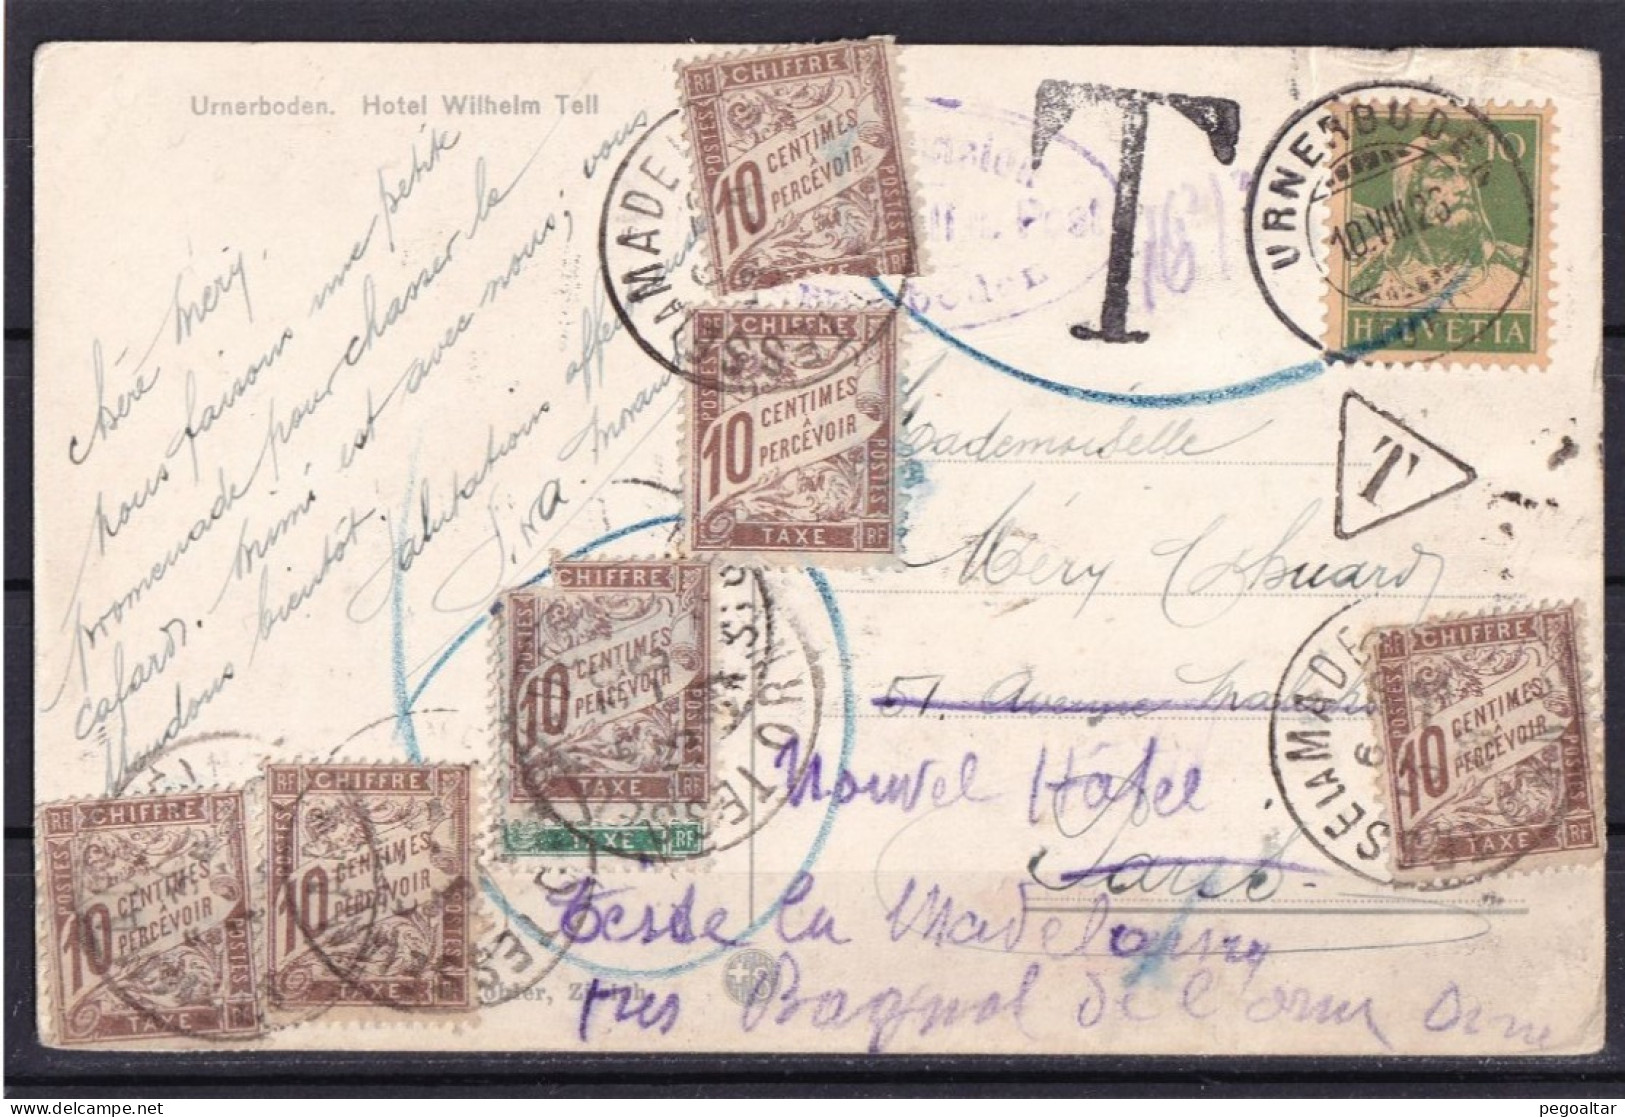 Minimum étranger (60cts) Réexpédition 10-08-1926. - 1859-1959 Covers & Documents